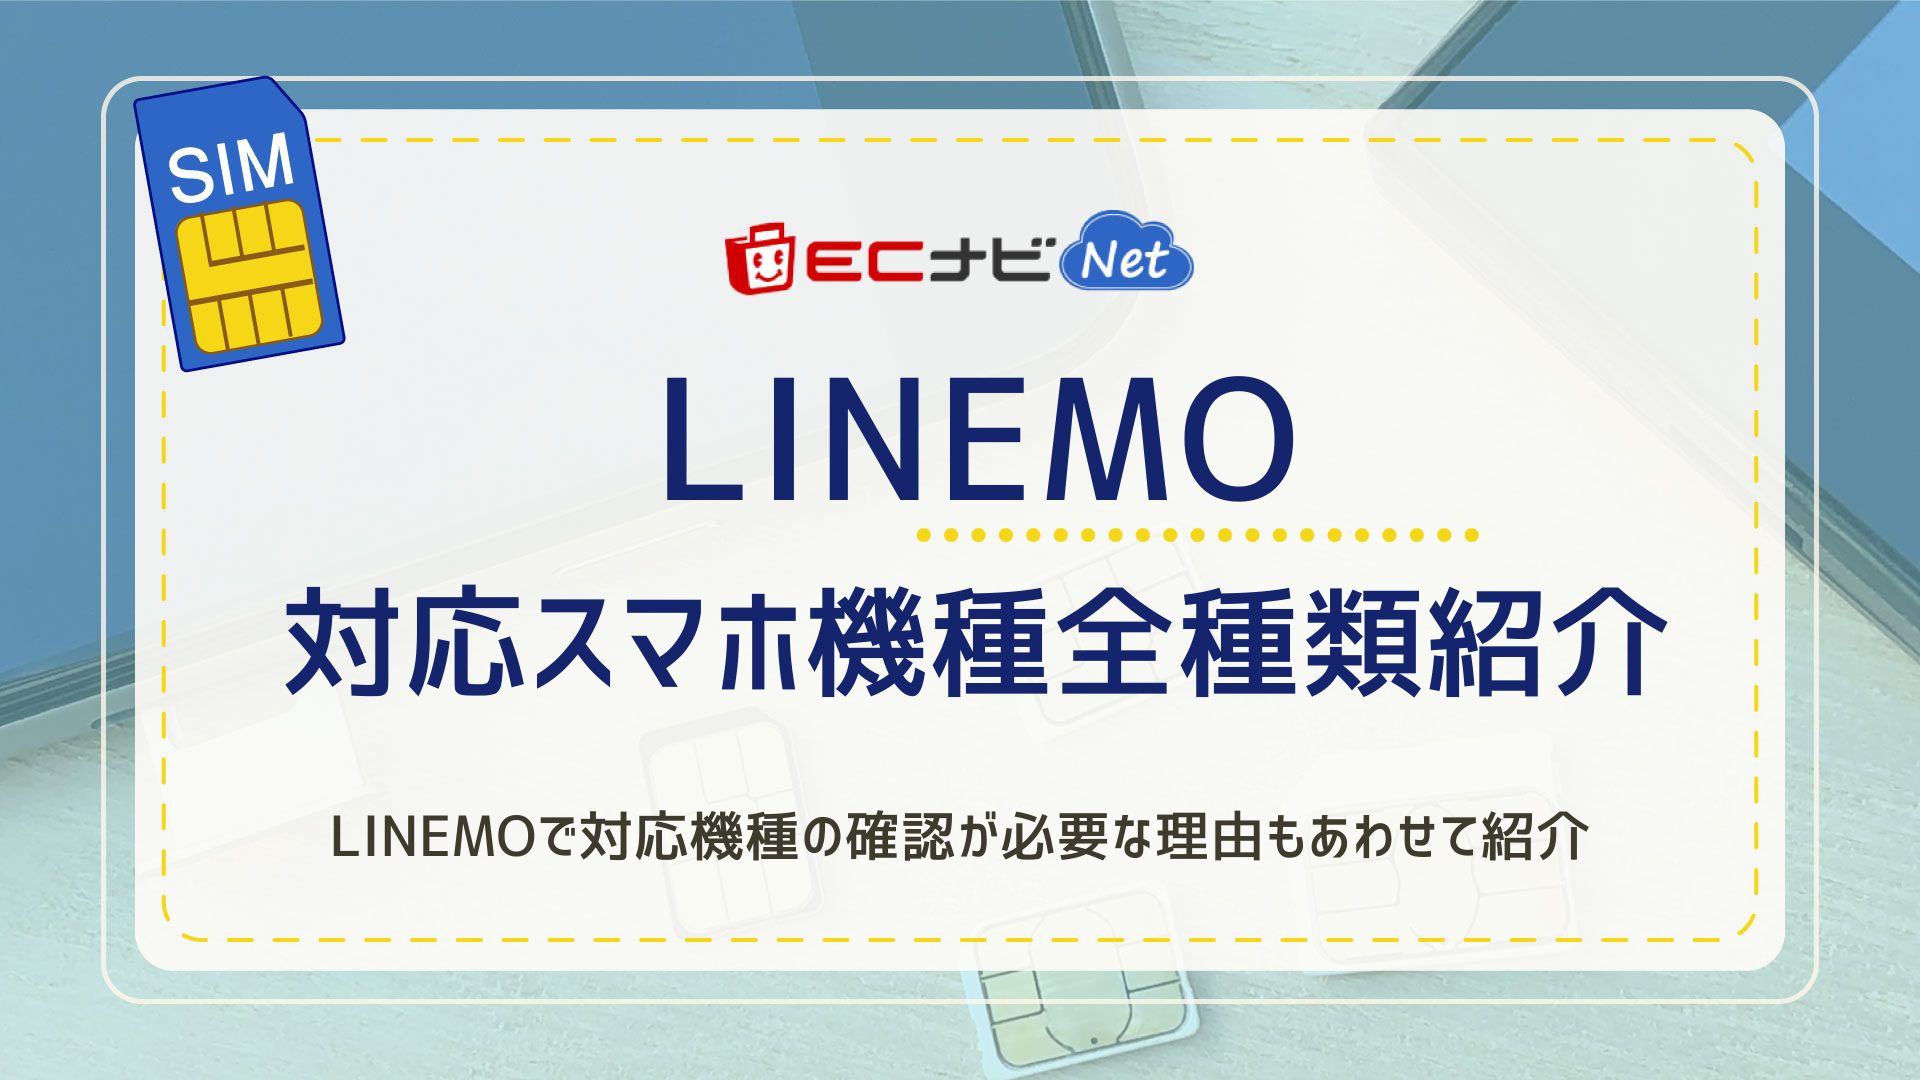 【2020年春版】LINEMO対応機種をメーカー別で全機種紹介